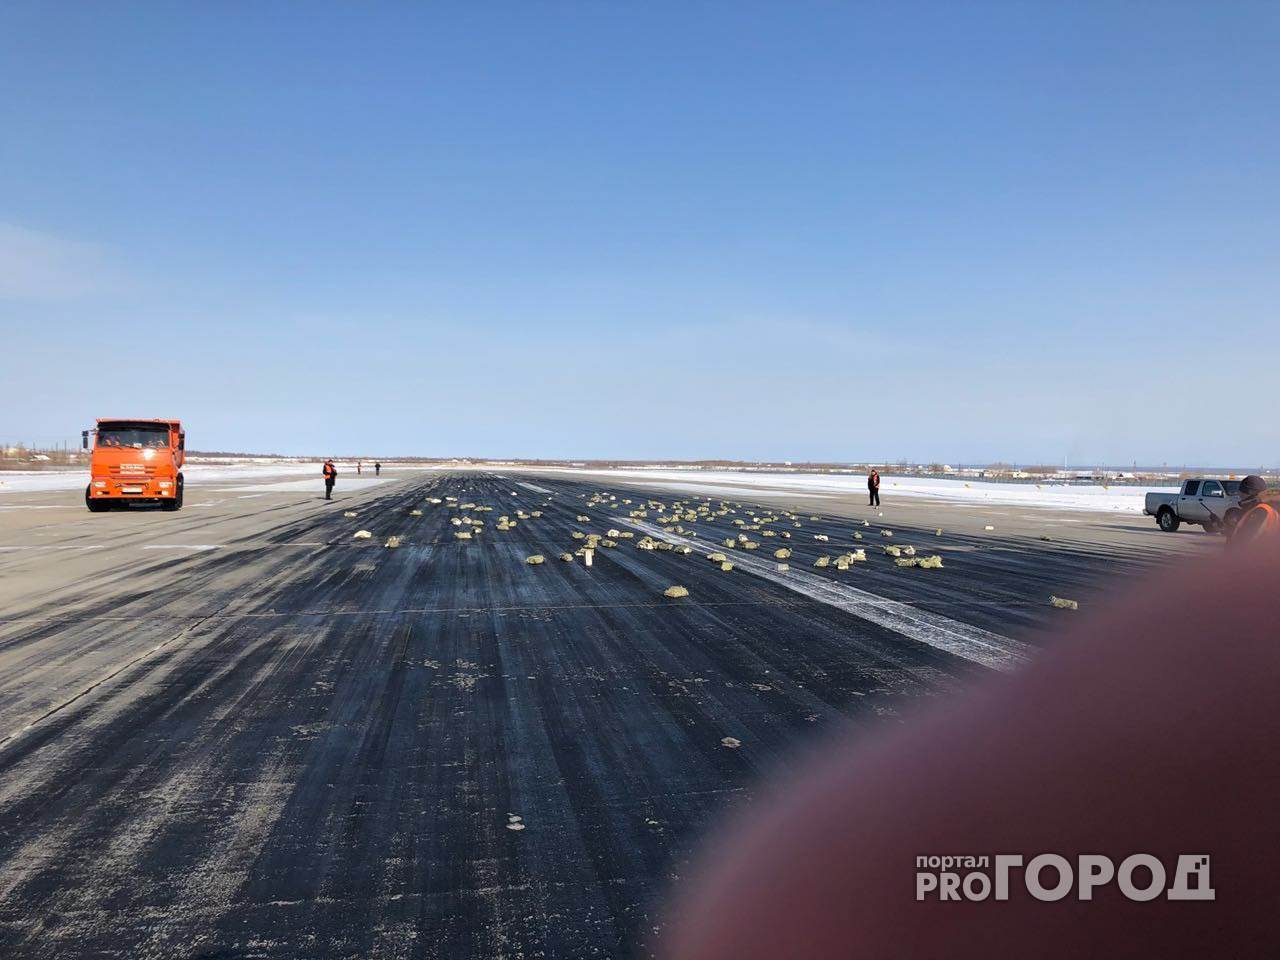 3.5 тонны золота разбросало по взлетной полосе аэропорта в Якутске